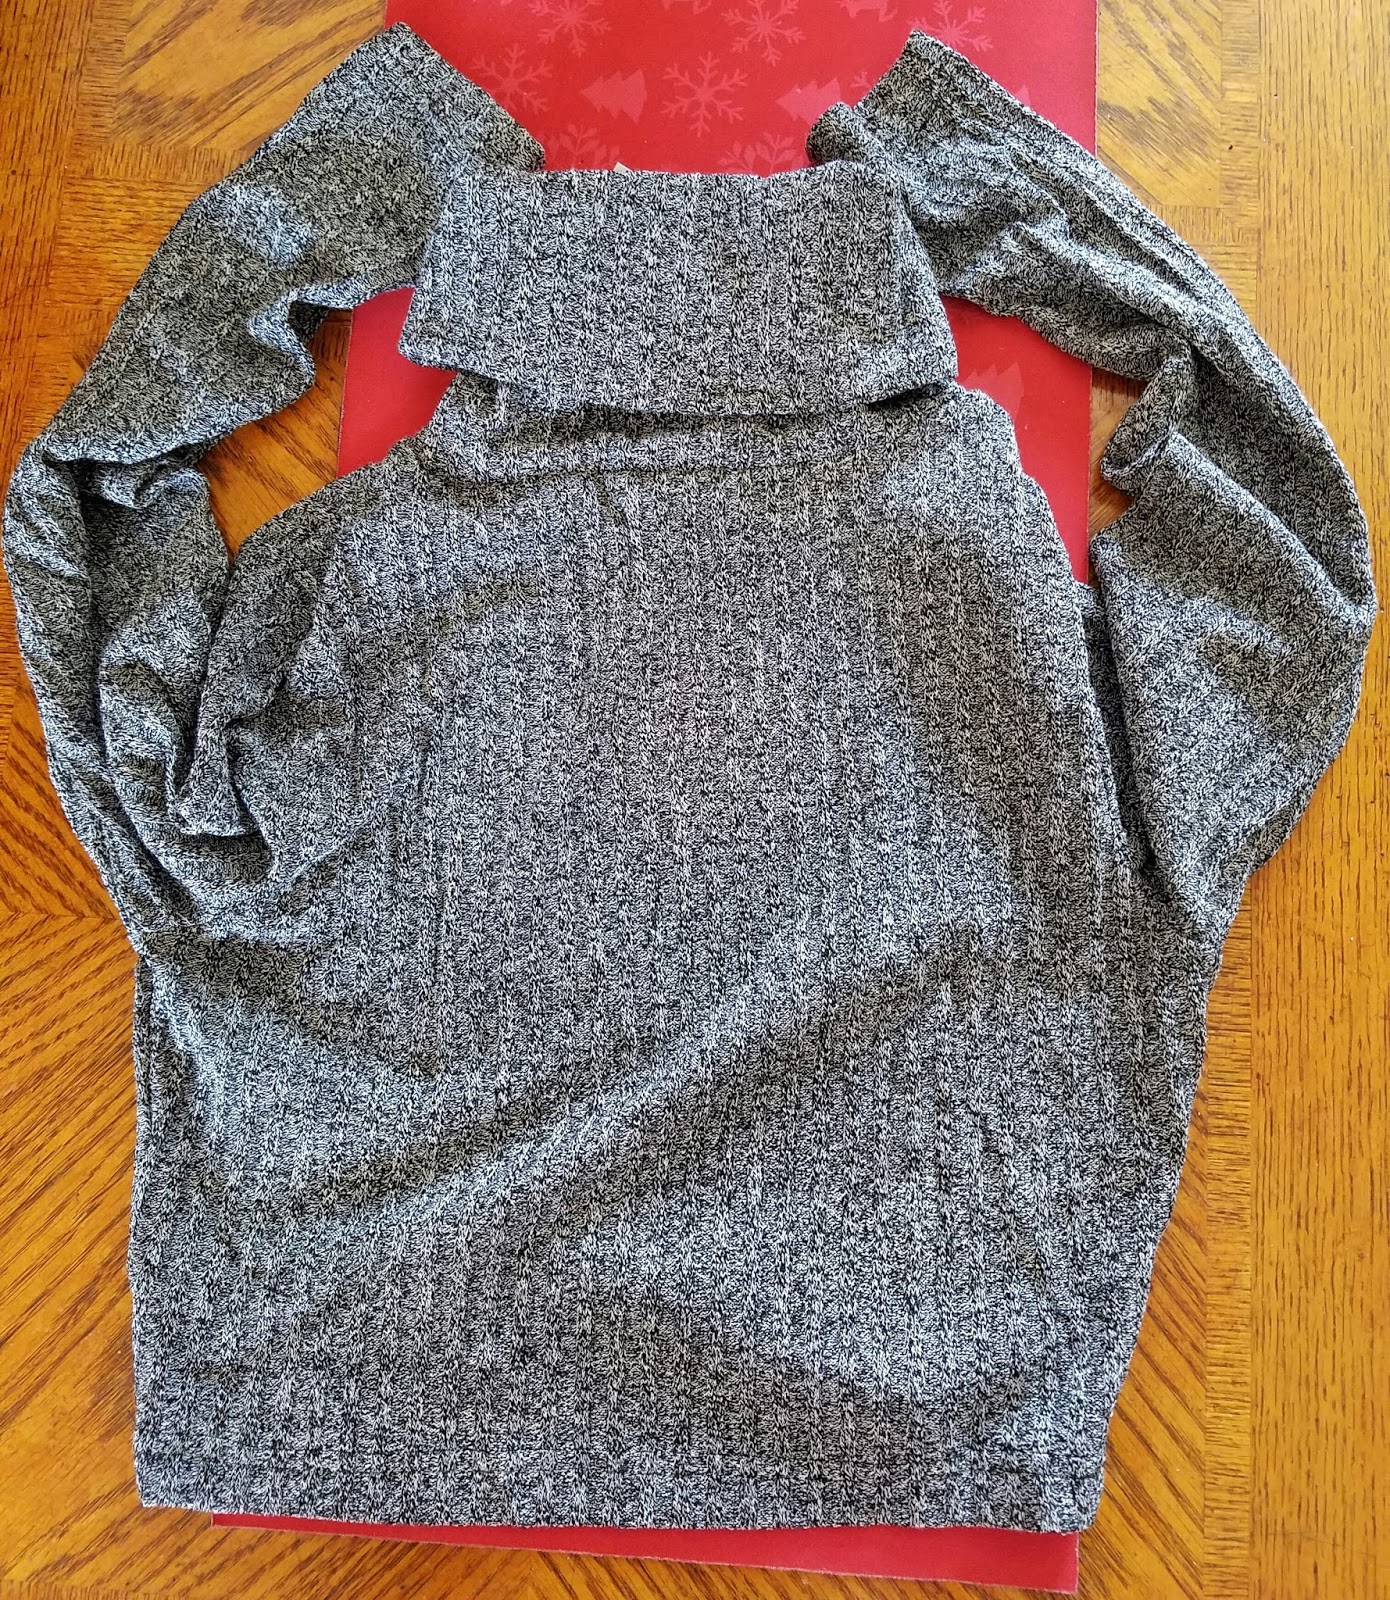 Joeoy Women's Turtleneck Crop Top Sweater Review - Bridgette Kolesar ...